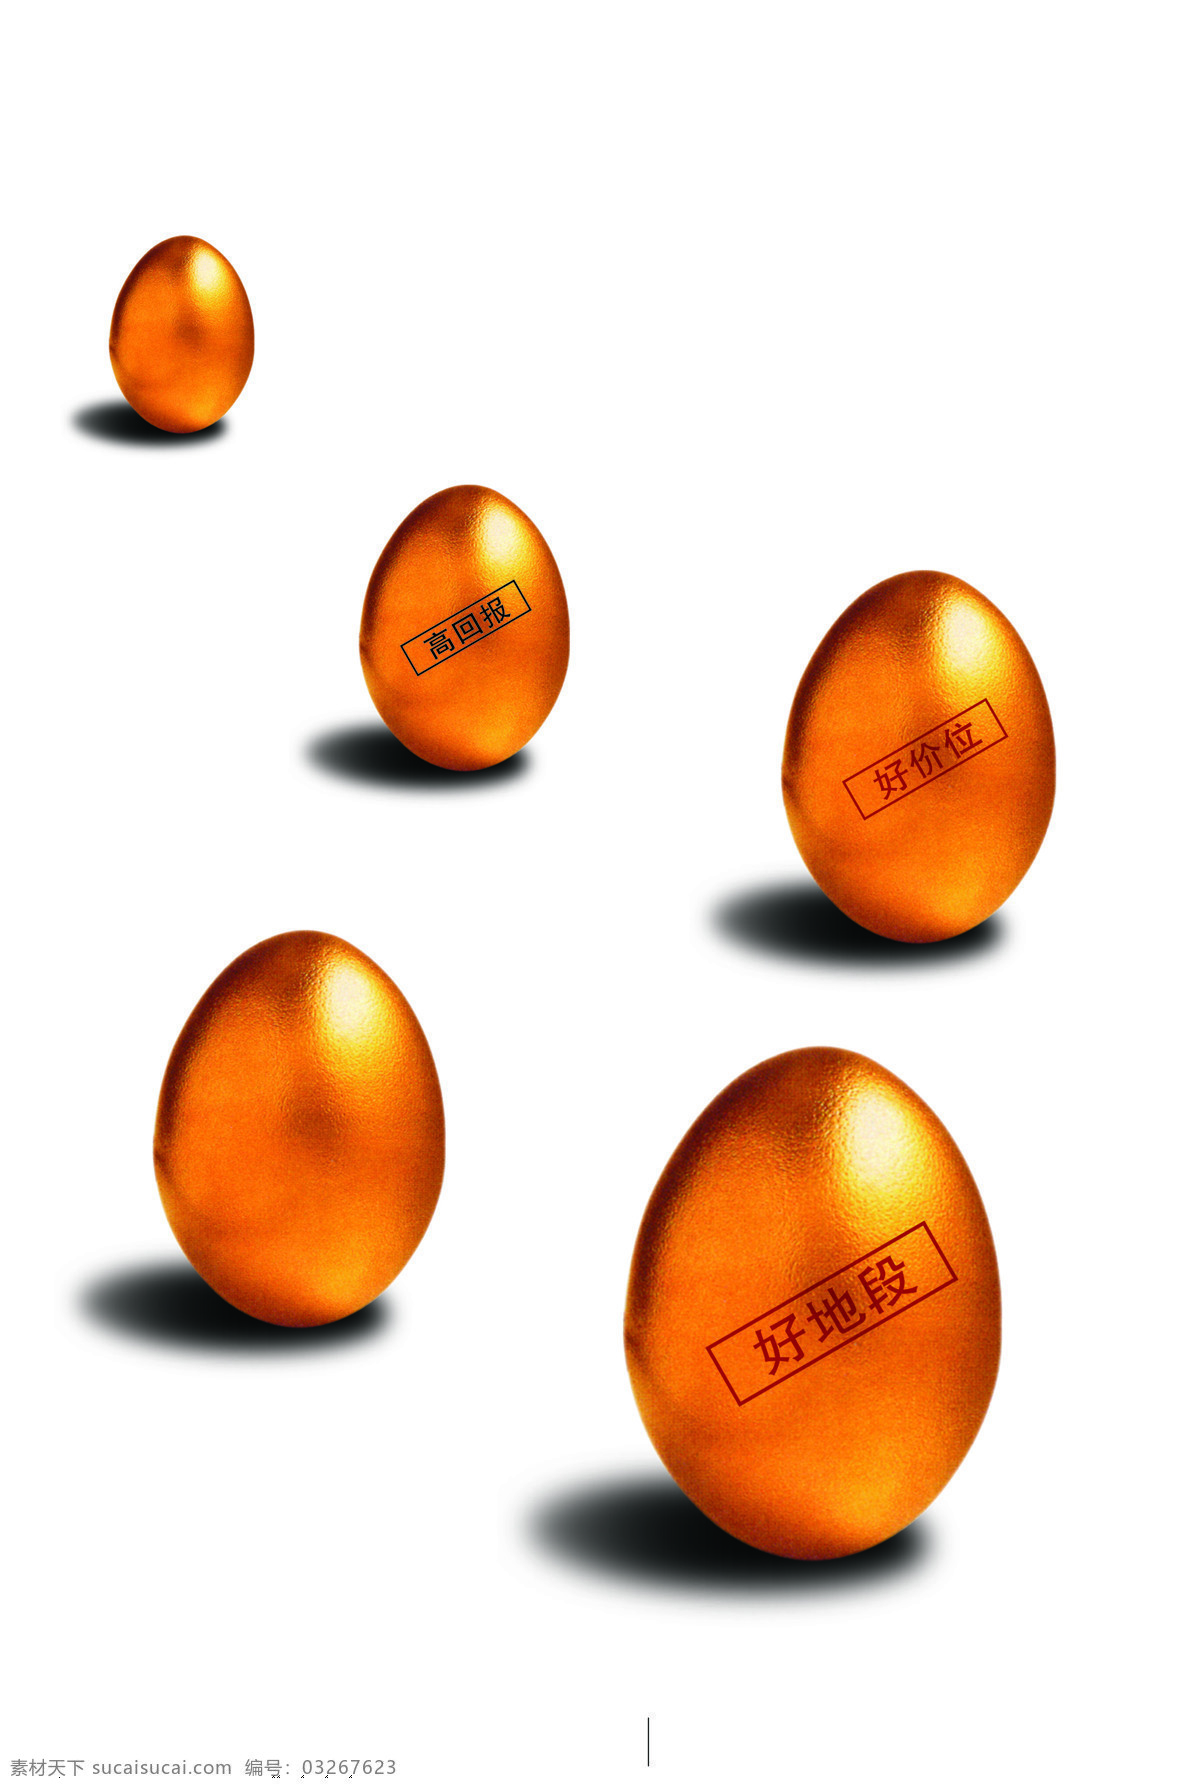 金蛋 设计图库 金 蛋 金蛋设计素材 金蛋模板下载 五个金蛋 好地段 好价位 高回报 psd源文件